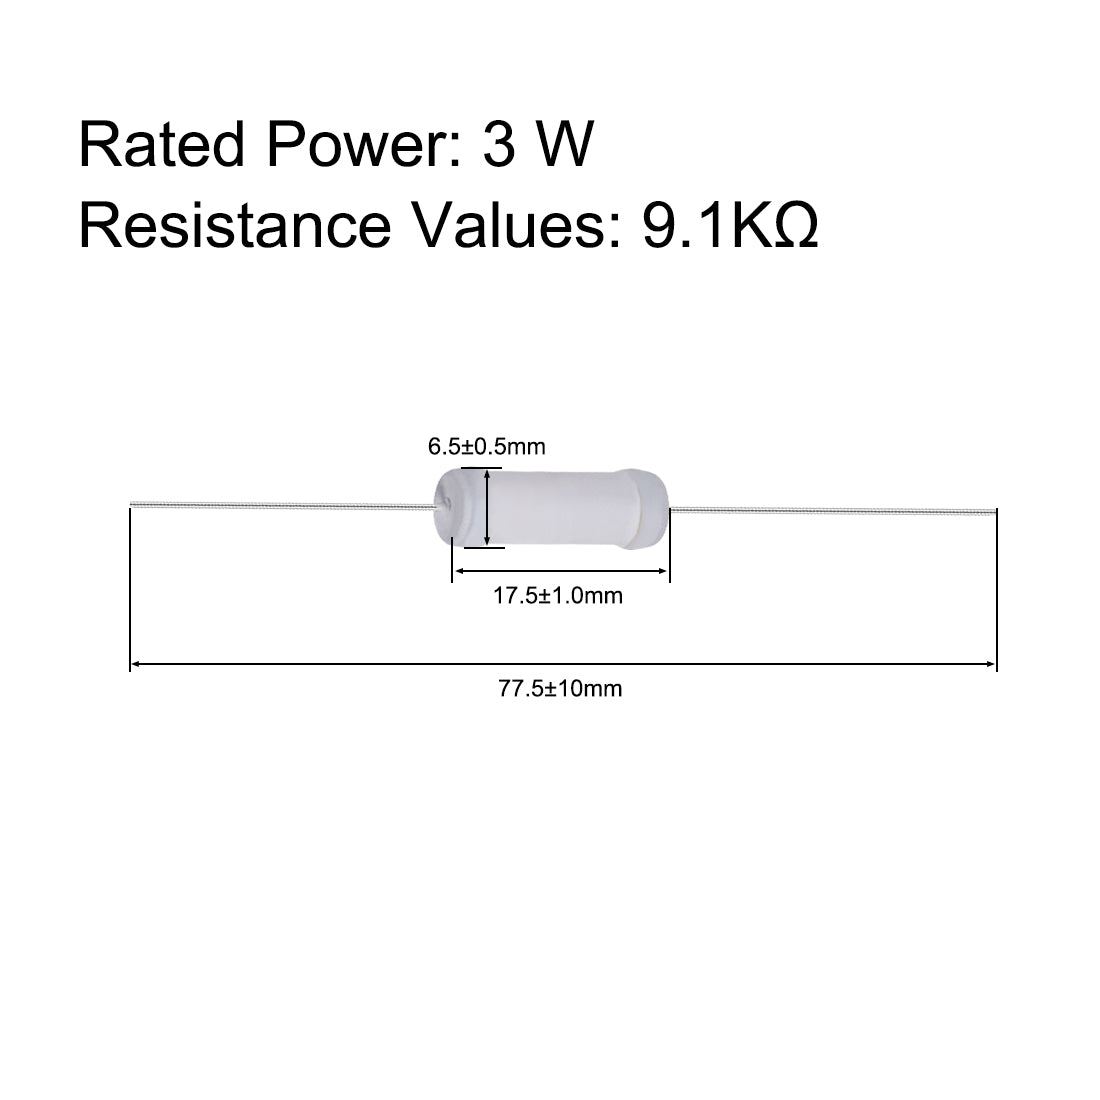 uxcell Uxcell 20pcs 3W 3 Watt Metal Oxide Film Resistor Lead 9.1K Ohm ±5% Tolerance